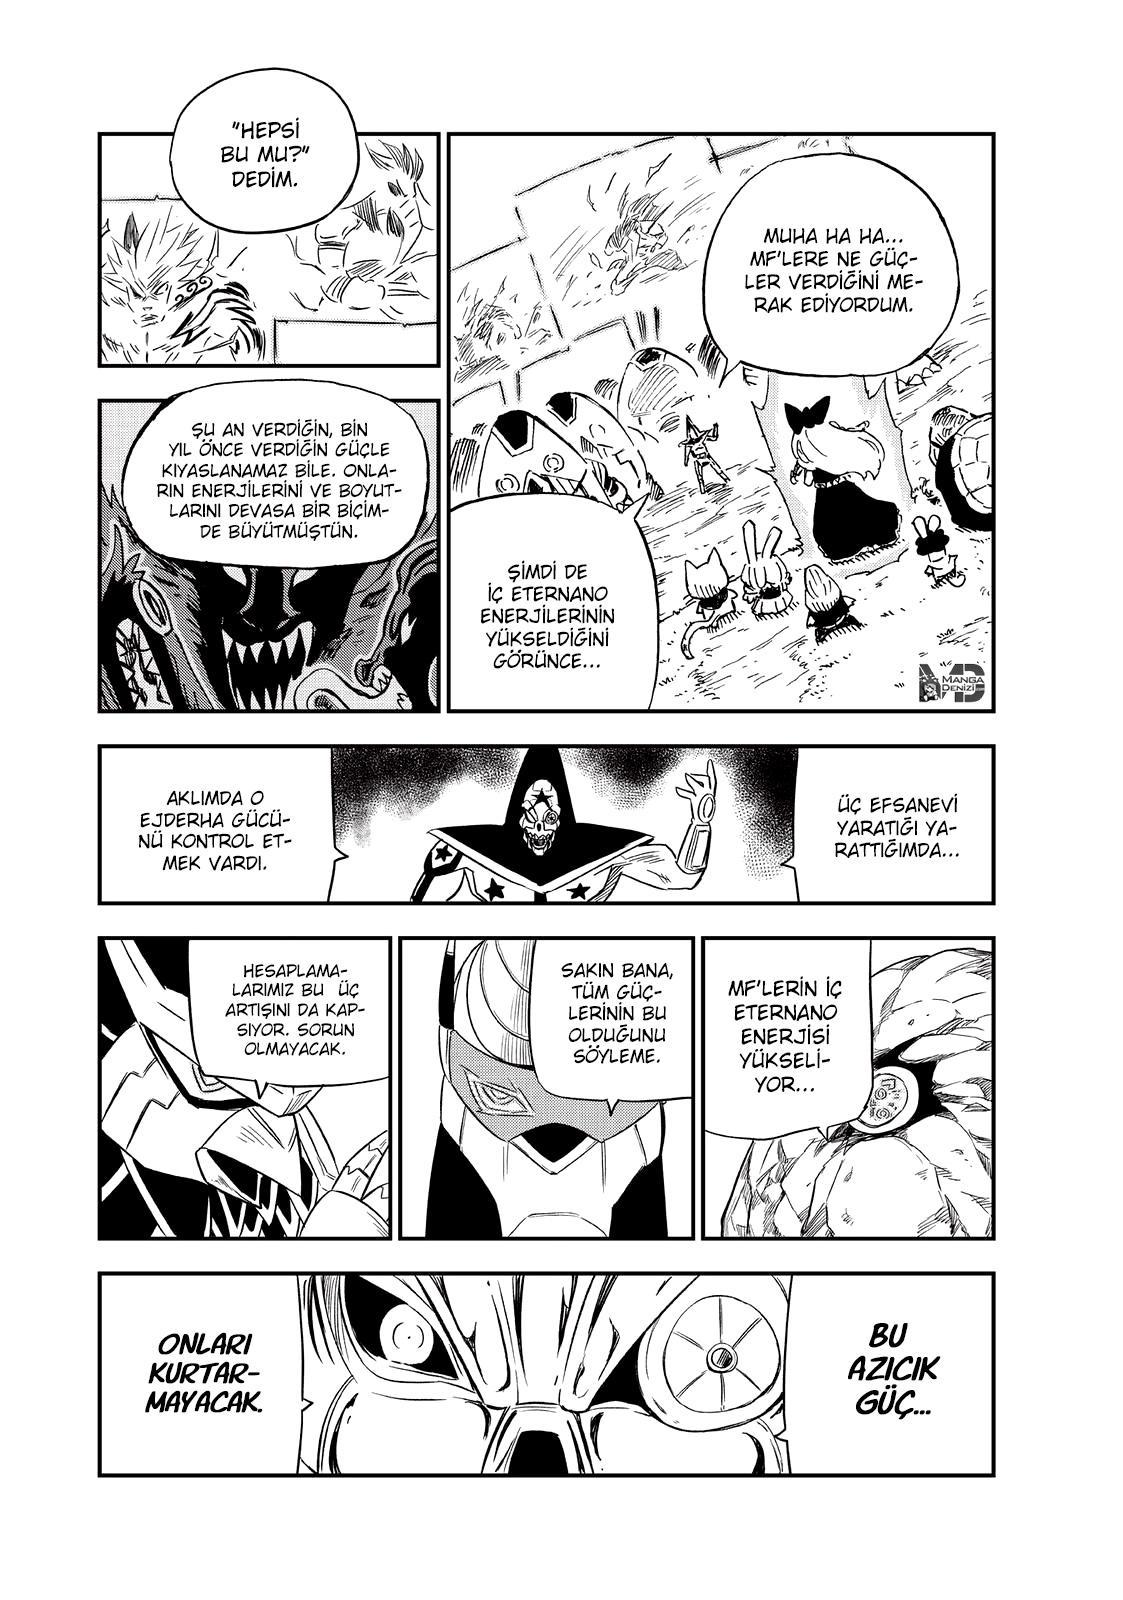 Fairy Tail: Happy's Great Adventure mangasının 73 bölümünün 3. sayfasını okuyorsunuz.